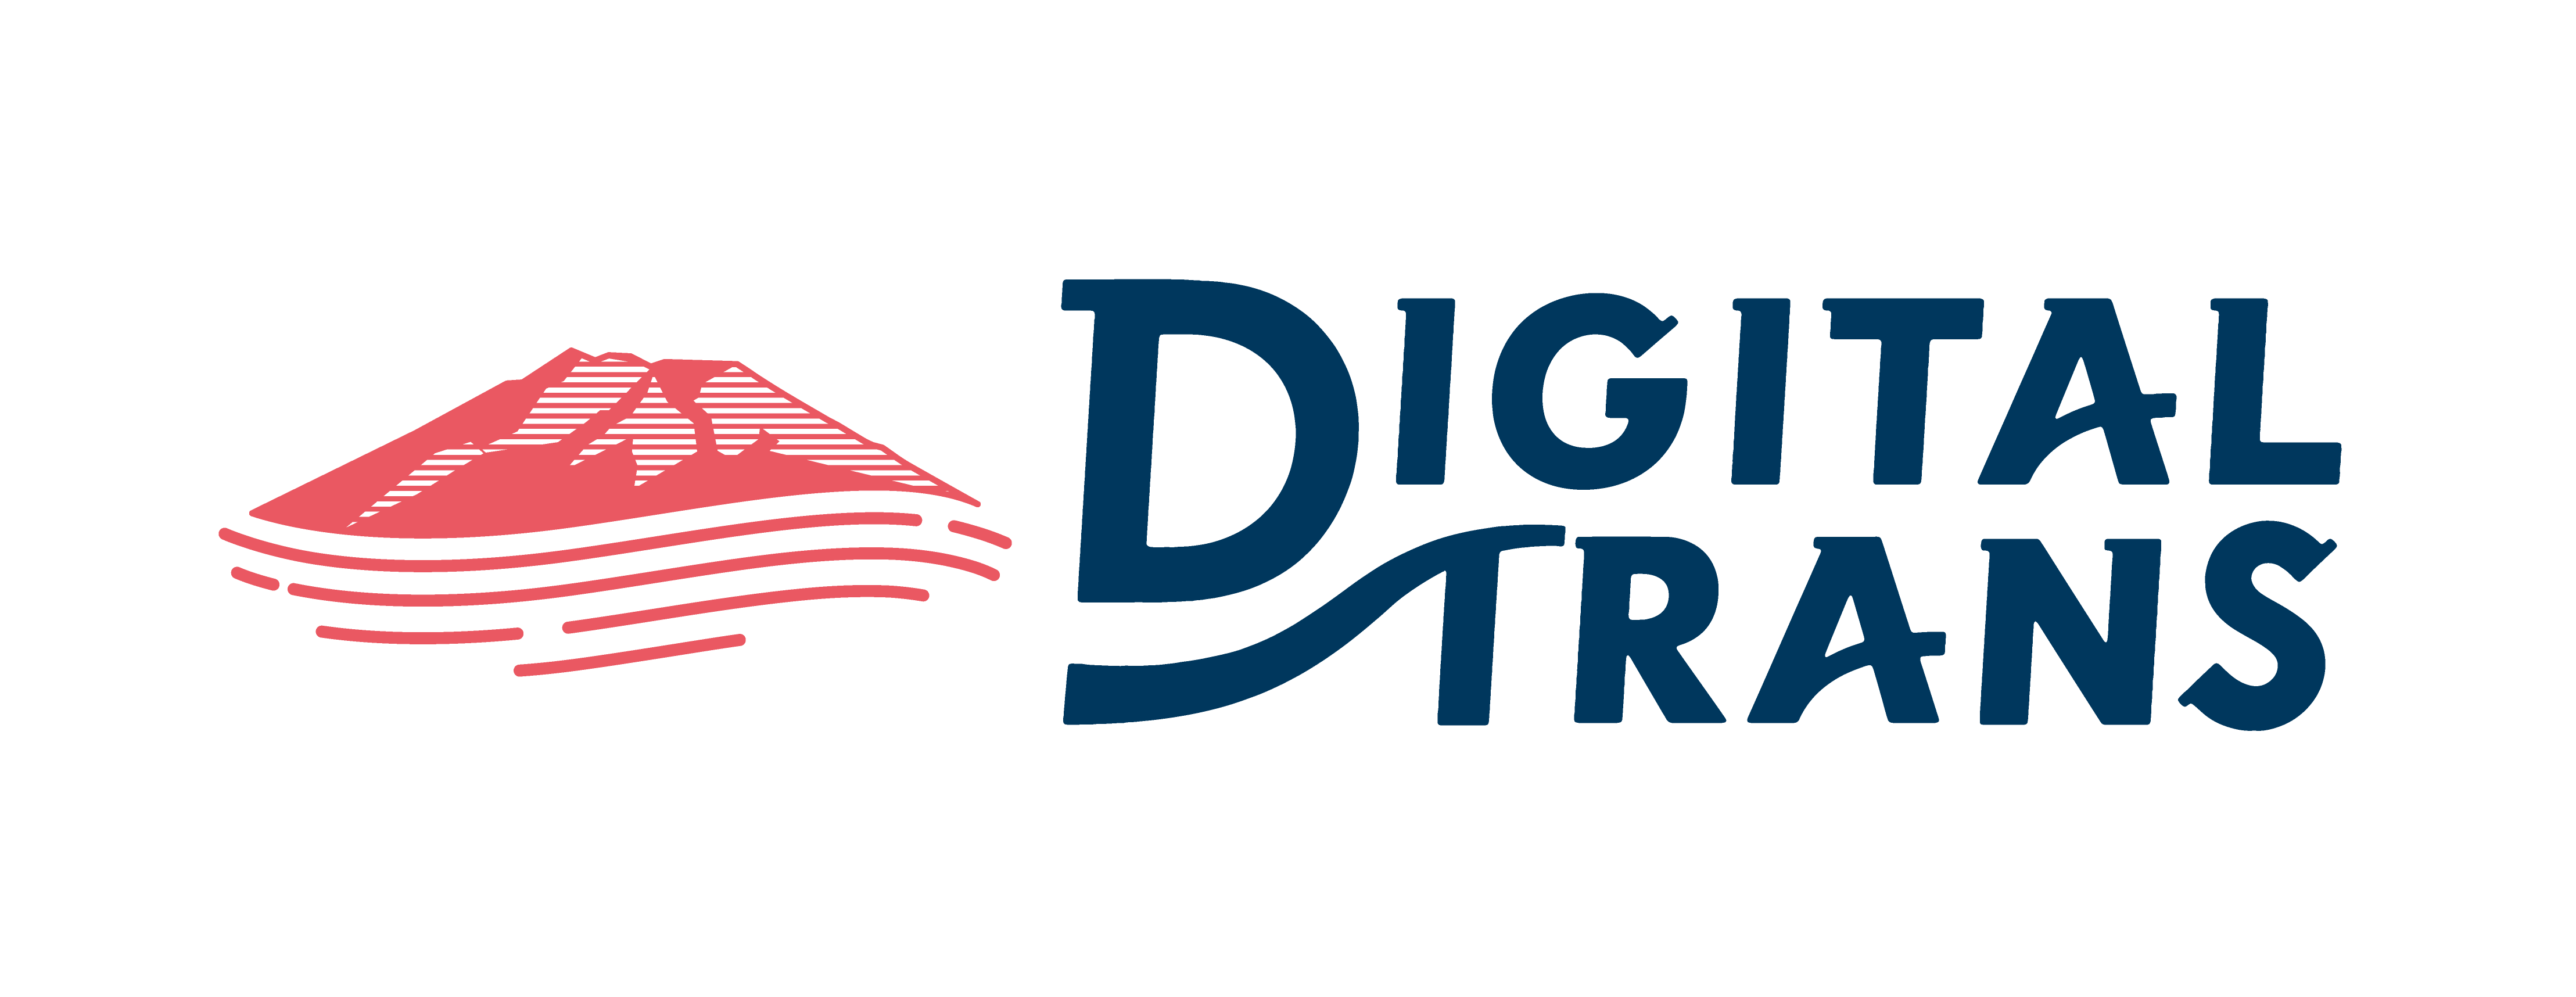 デジタルトランス株式会社